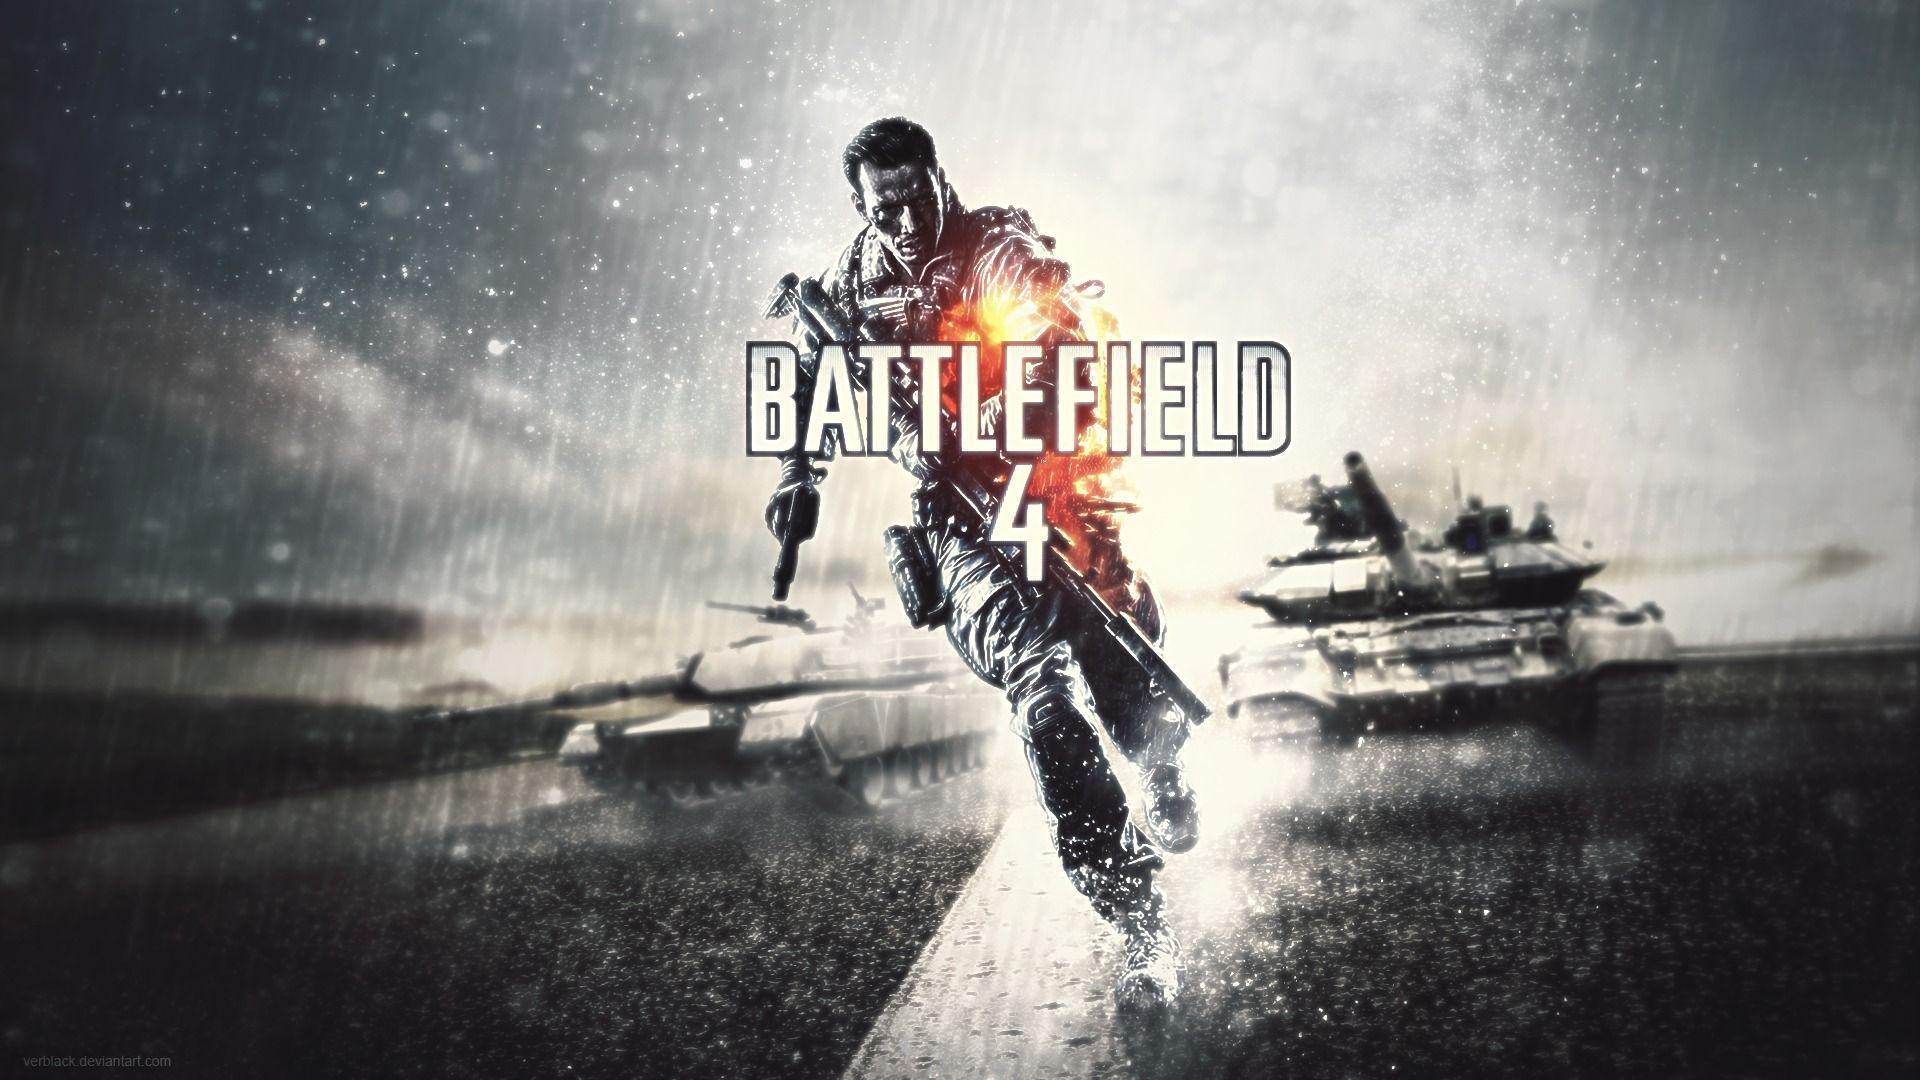 Full HD 1080p Battlefield 4 Wallpaper HD, Desktop Background